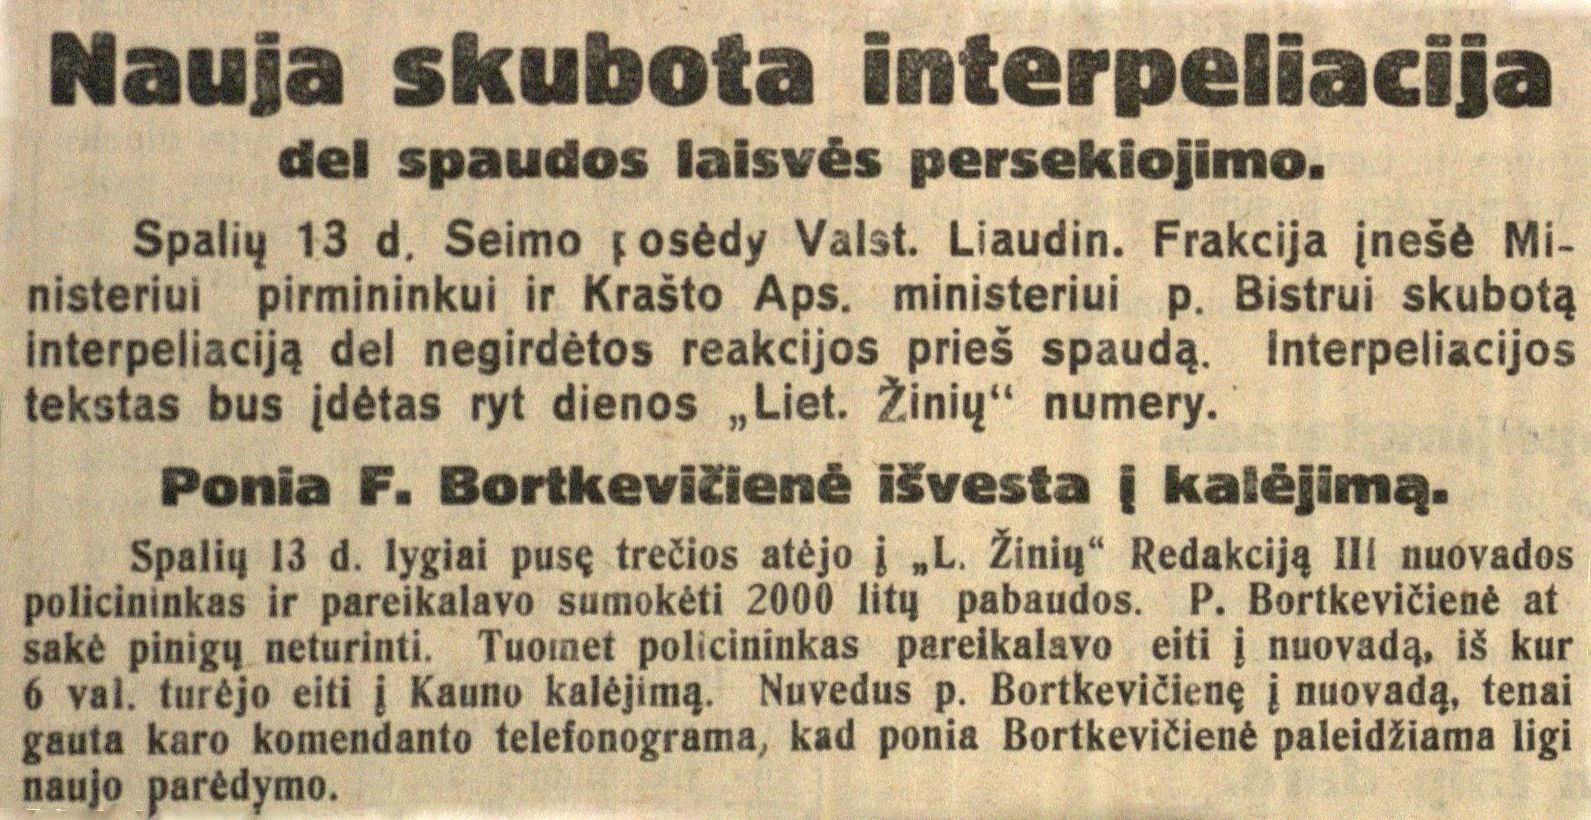 Nauja skubota interpeliacija dėl spaudos laisvės persekiojimo; Ponia F. Bortkevičienė išvesta į kalėjimą